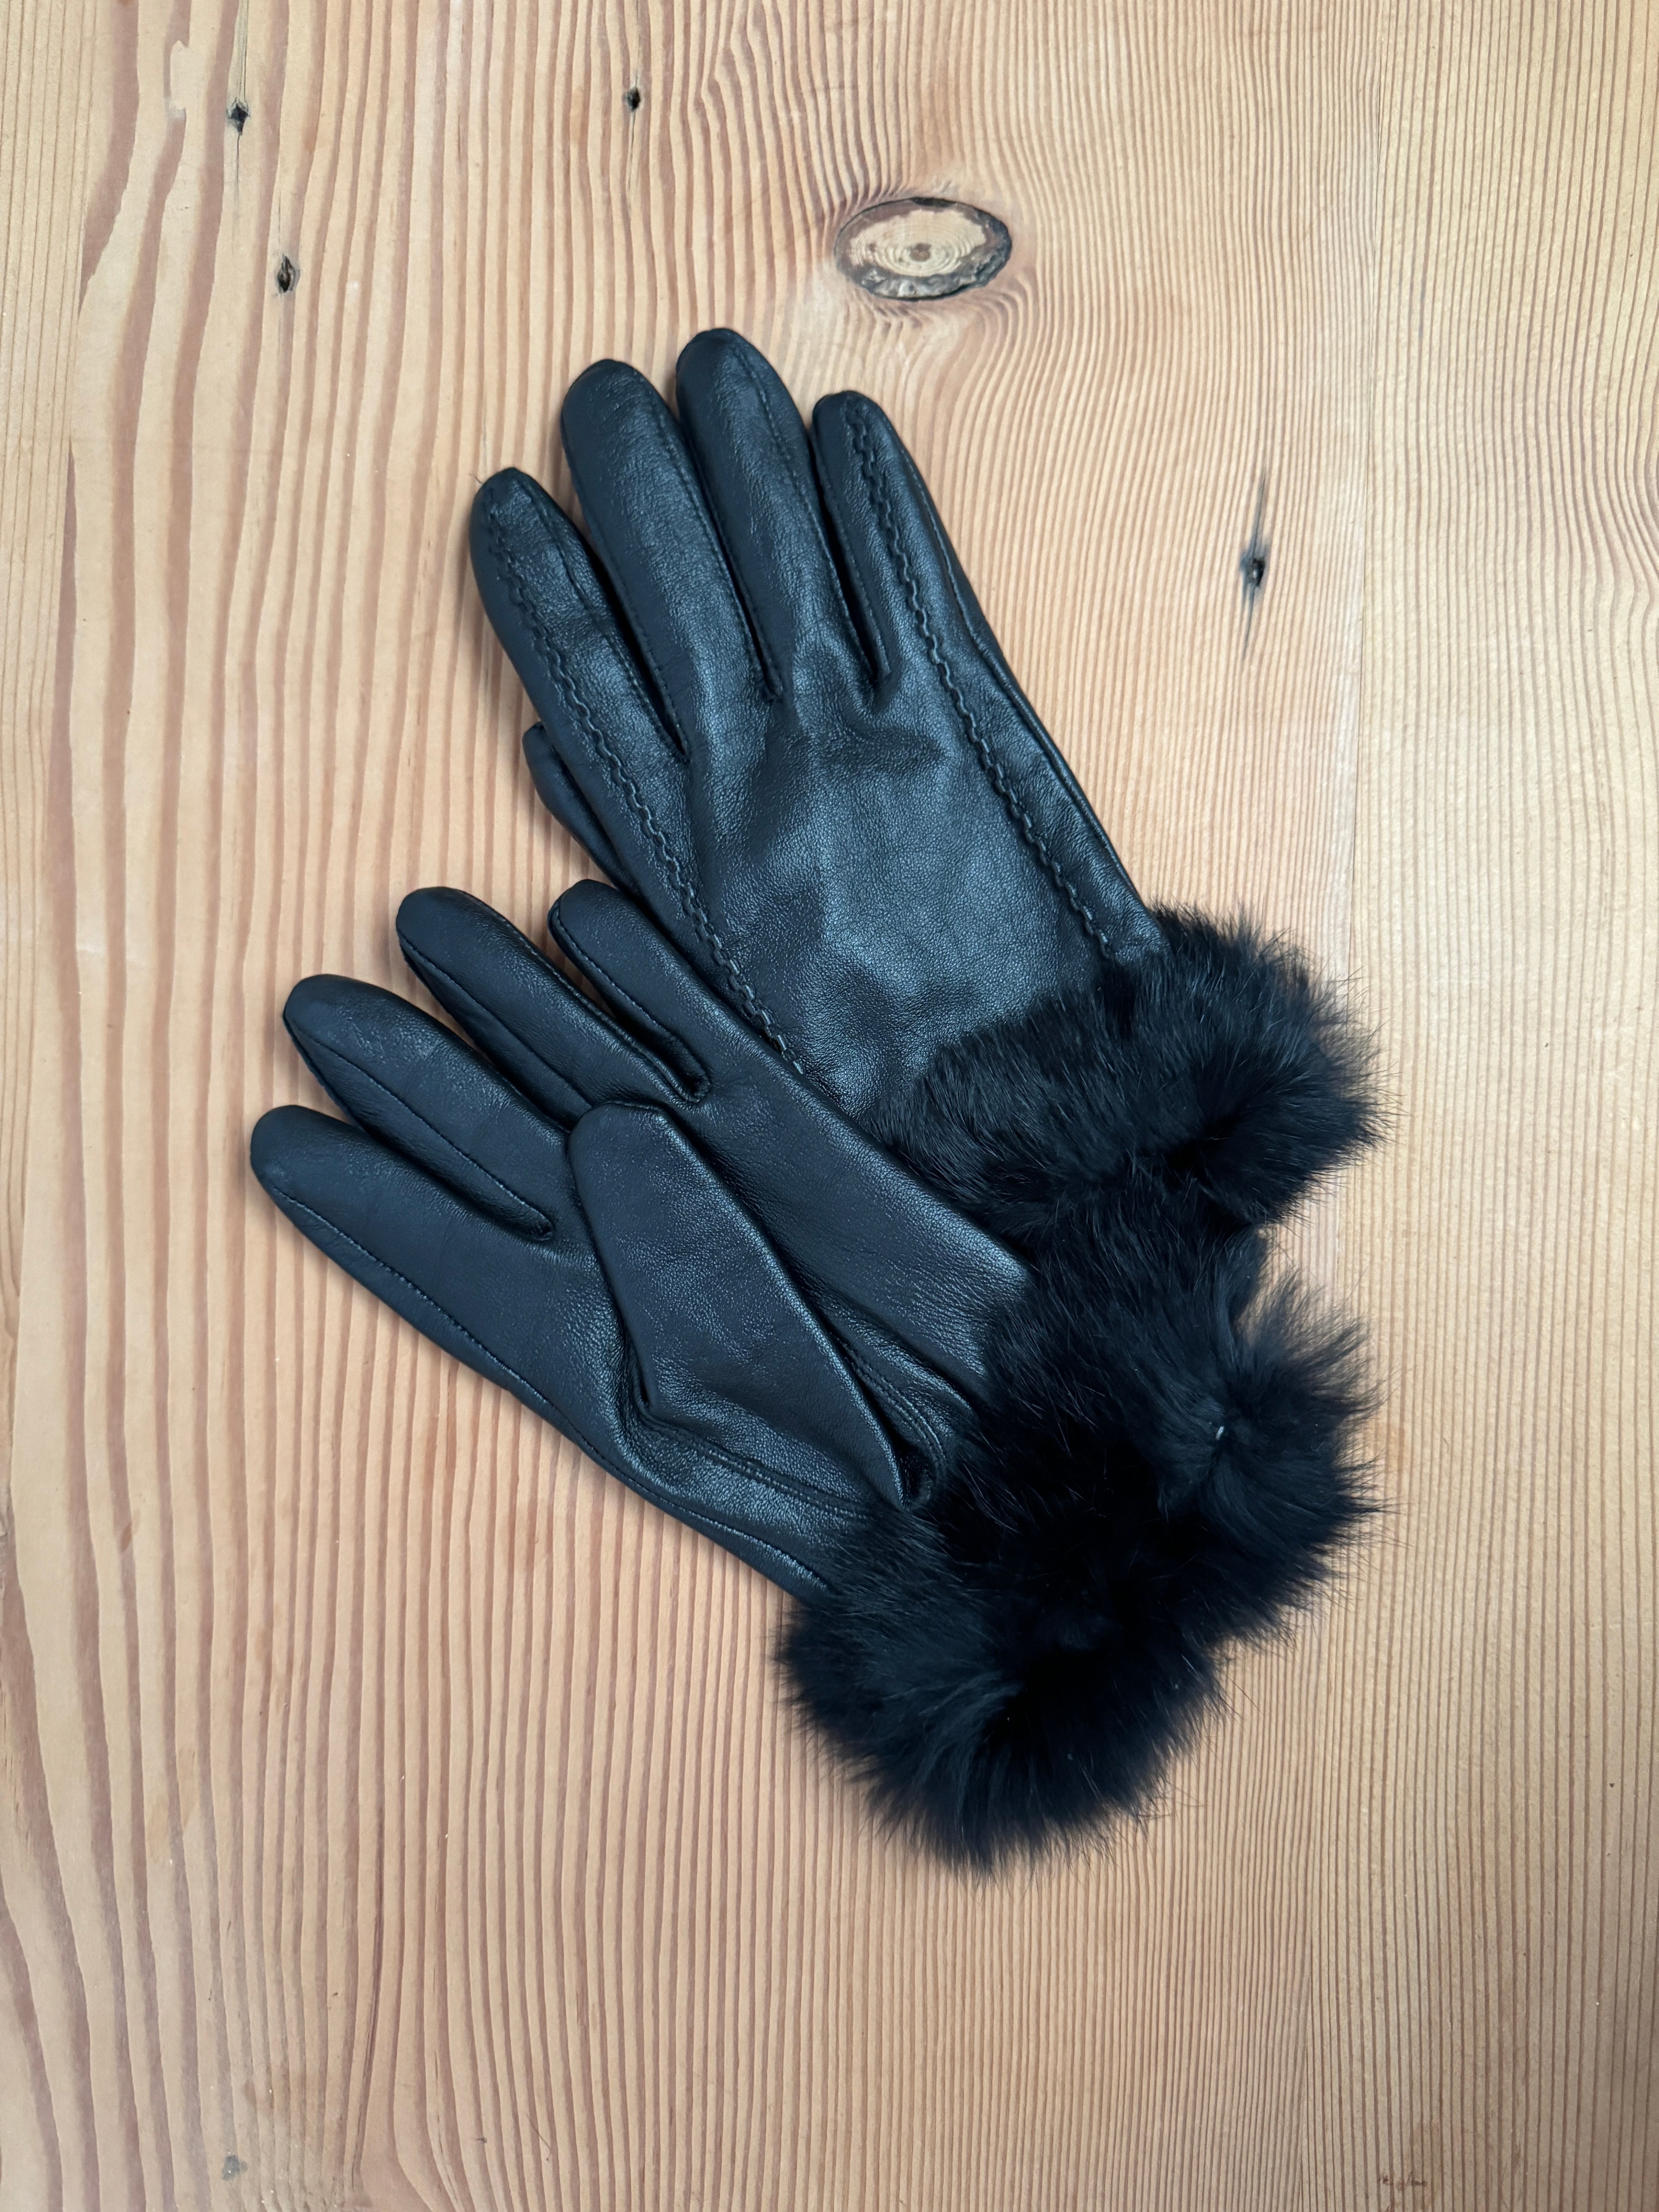 Vintage Fur Trim Gloves Black Leather